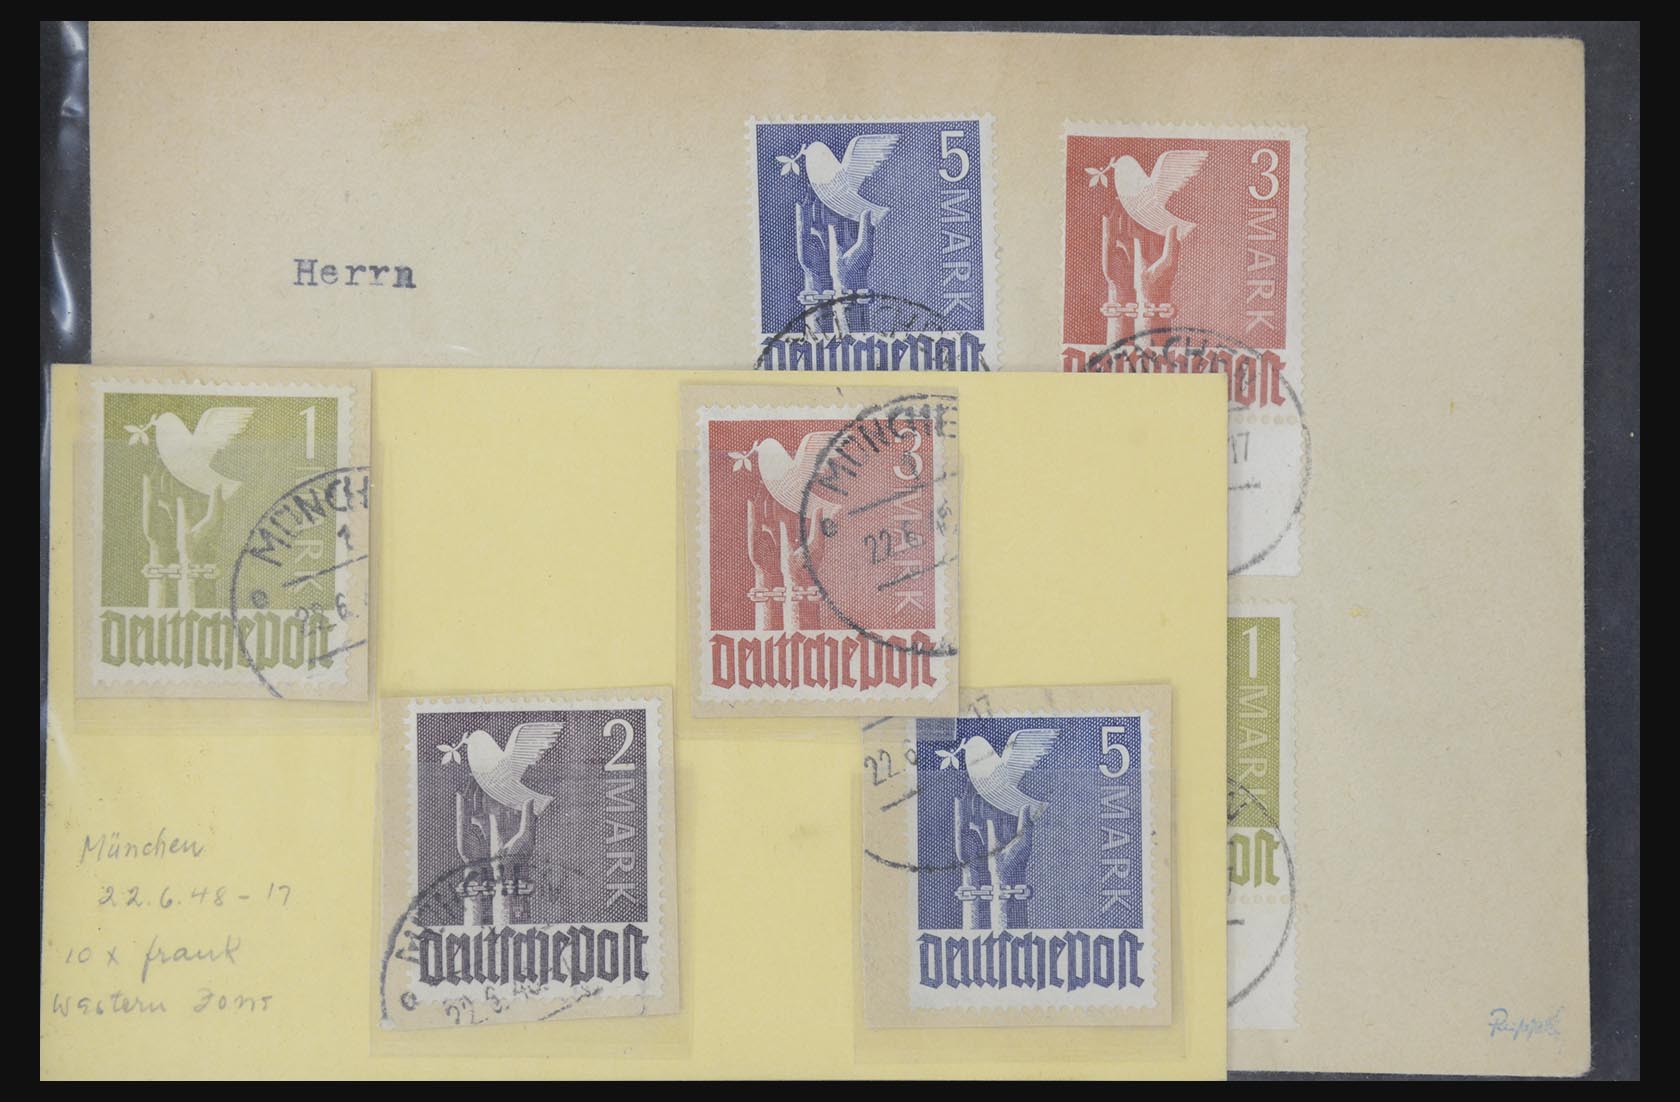 31581 016 - 31581 Duitsland brieven en FDC's 1945-1981.